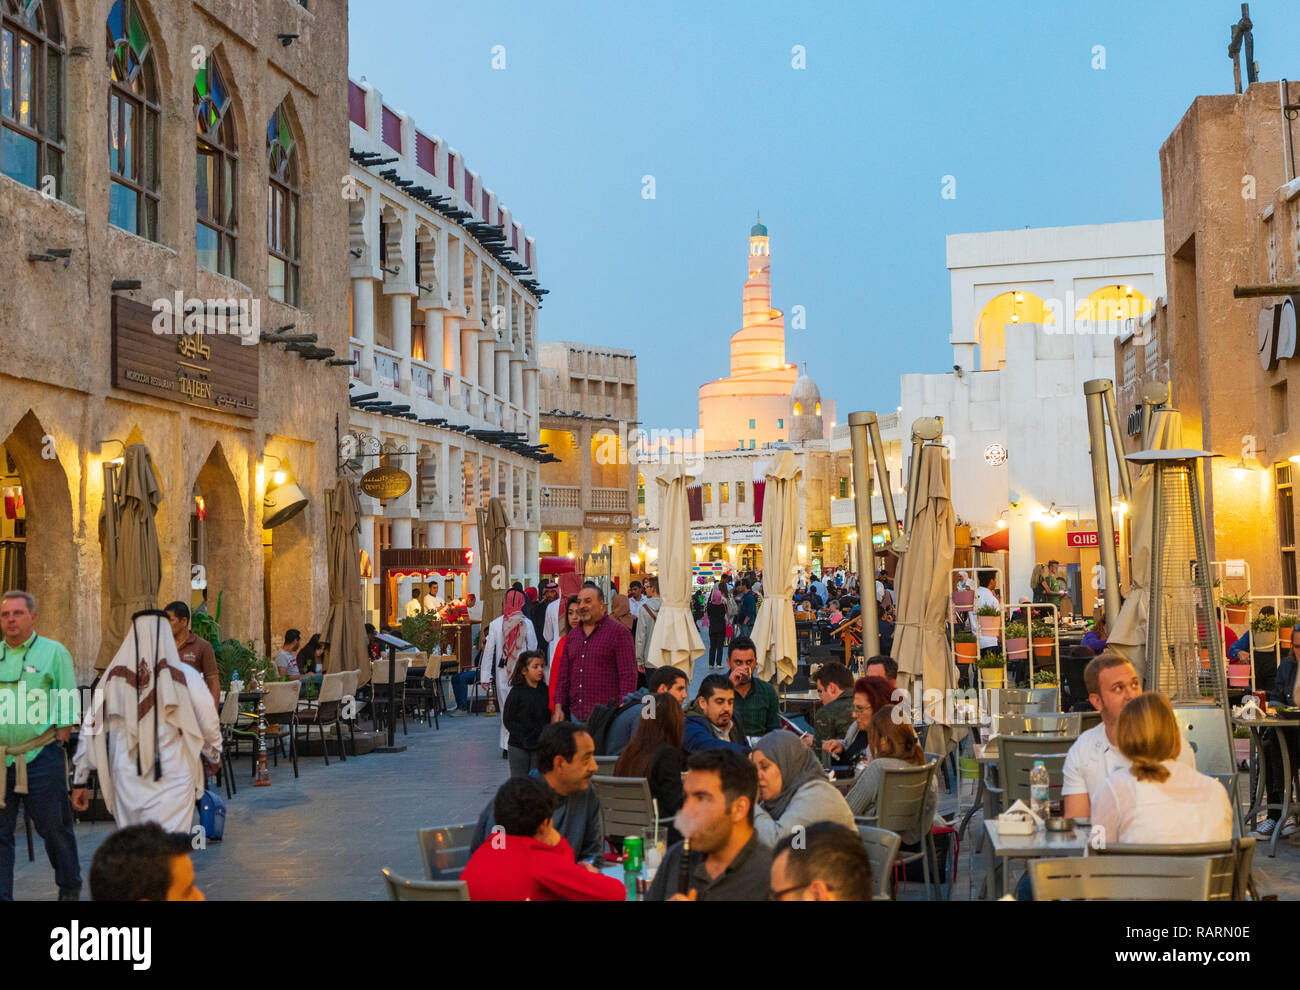 Am Abend Blick auf die Straße mit Menschen in Souq Waqif in Doha, Katar Stockfoto